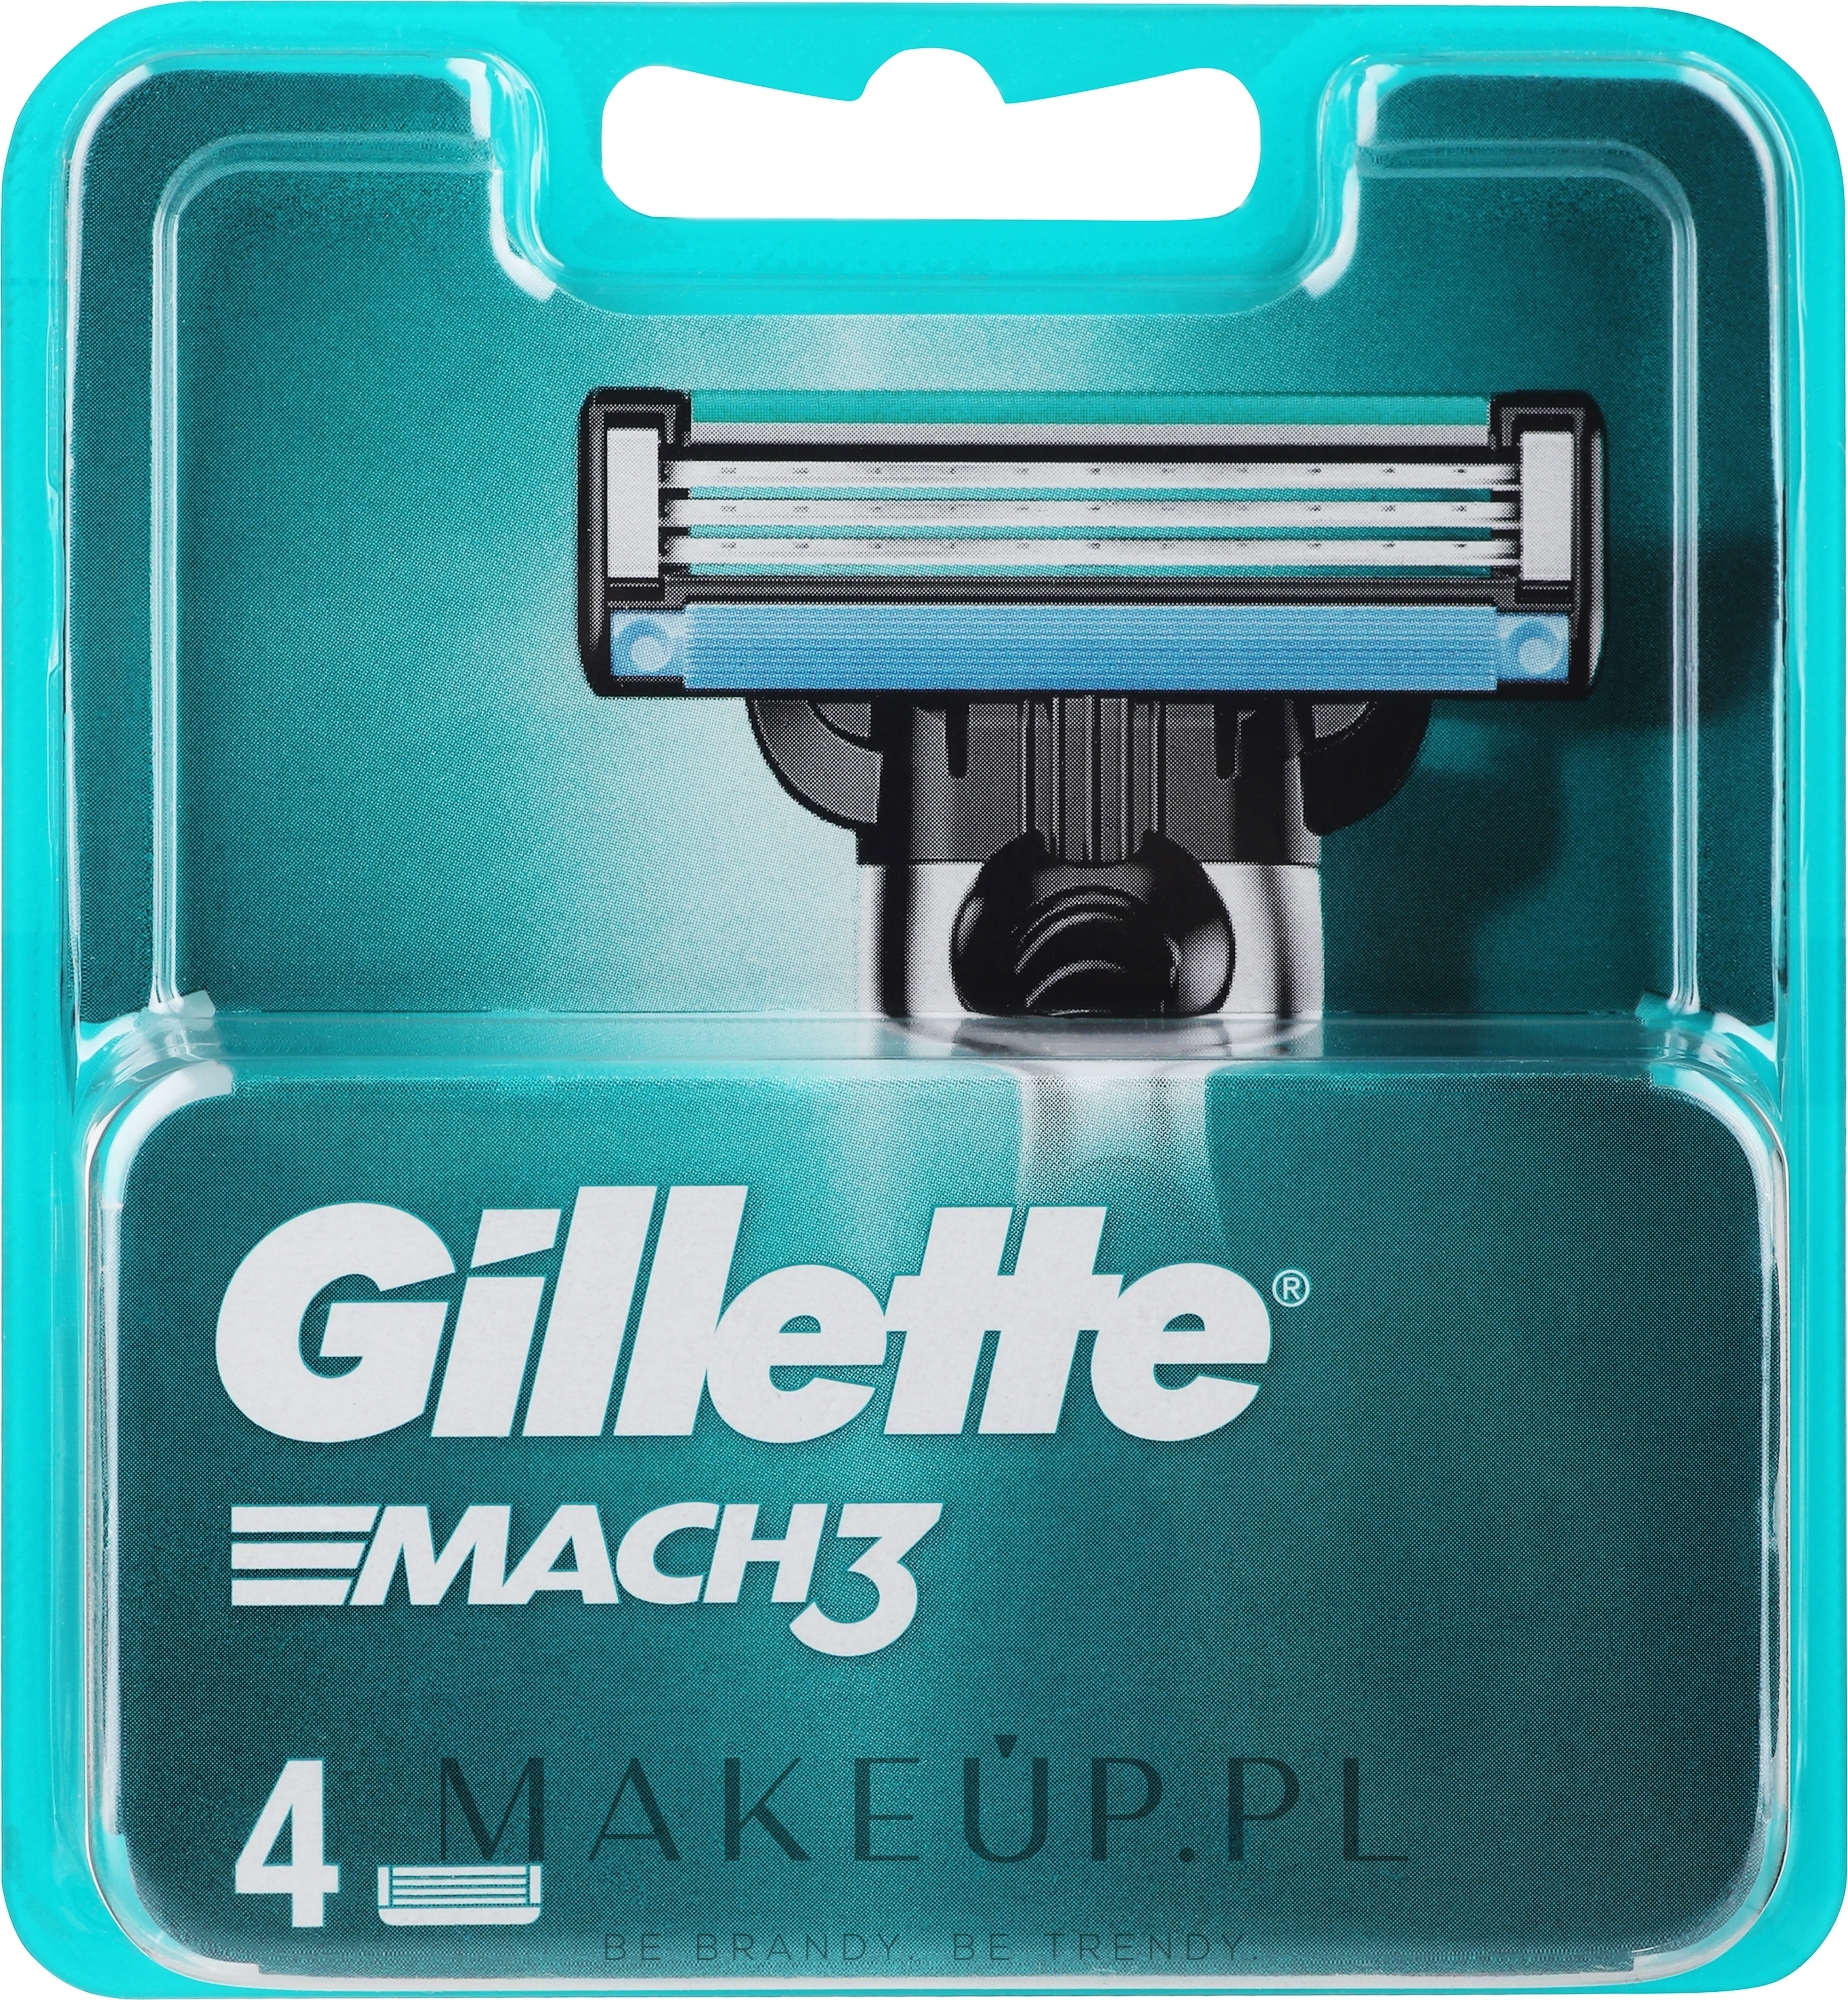 Wymienne wkłady do maszynki, 4 szt. - Gillette Mach3 — Zdjęcie 4 szt.